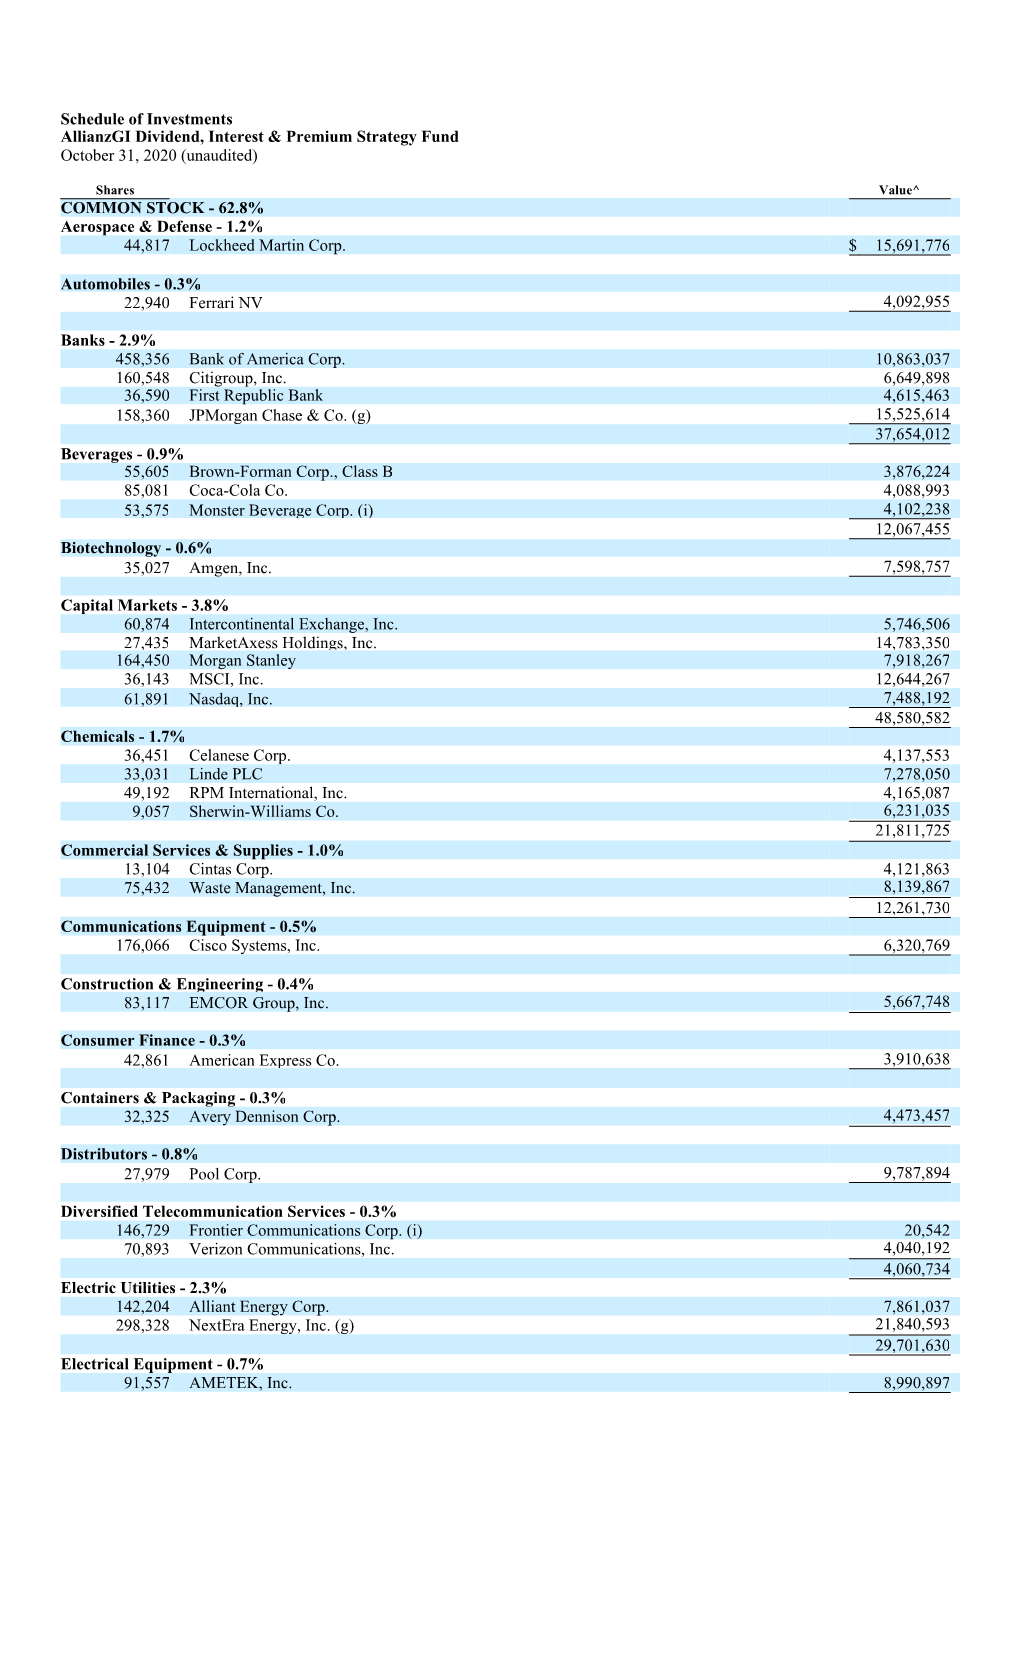 Schedule of Investments Allianzgi Dividend, Interest & Premium